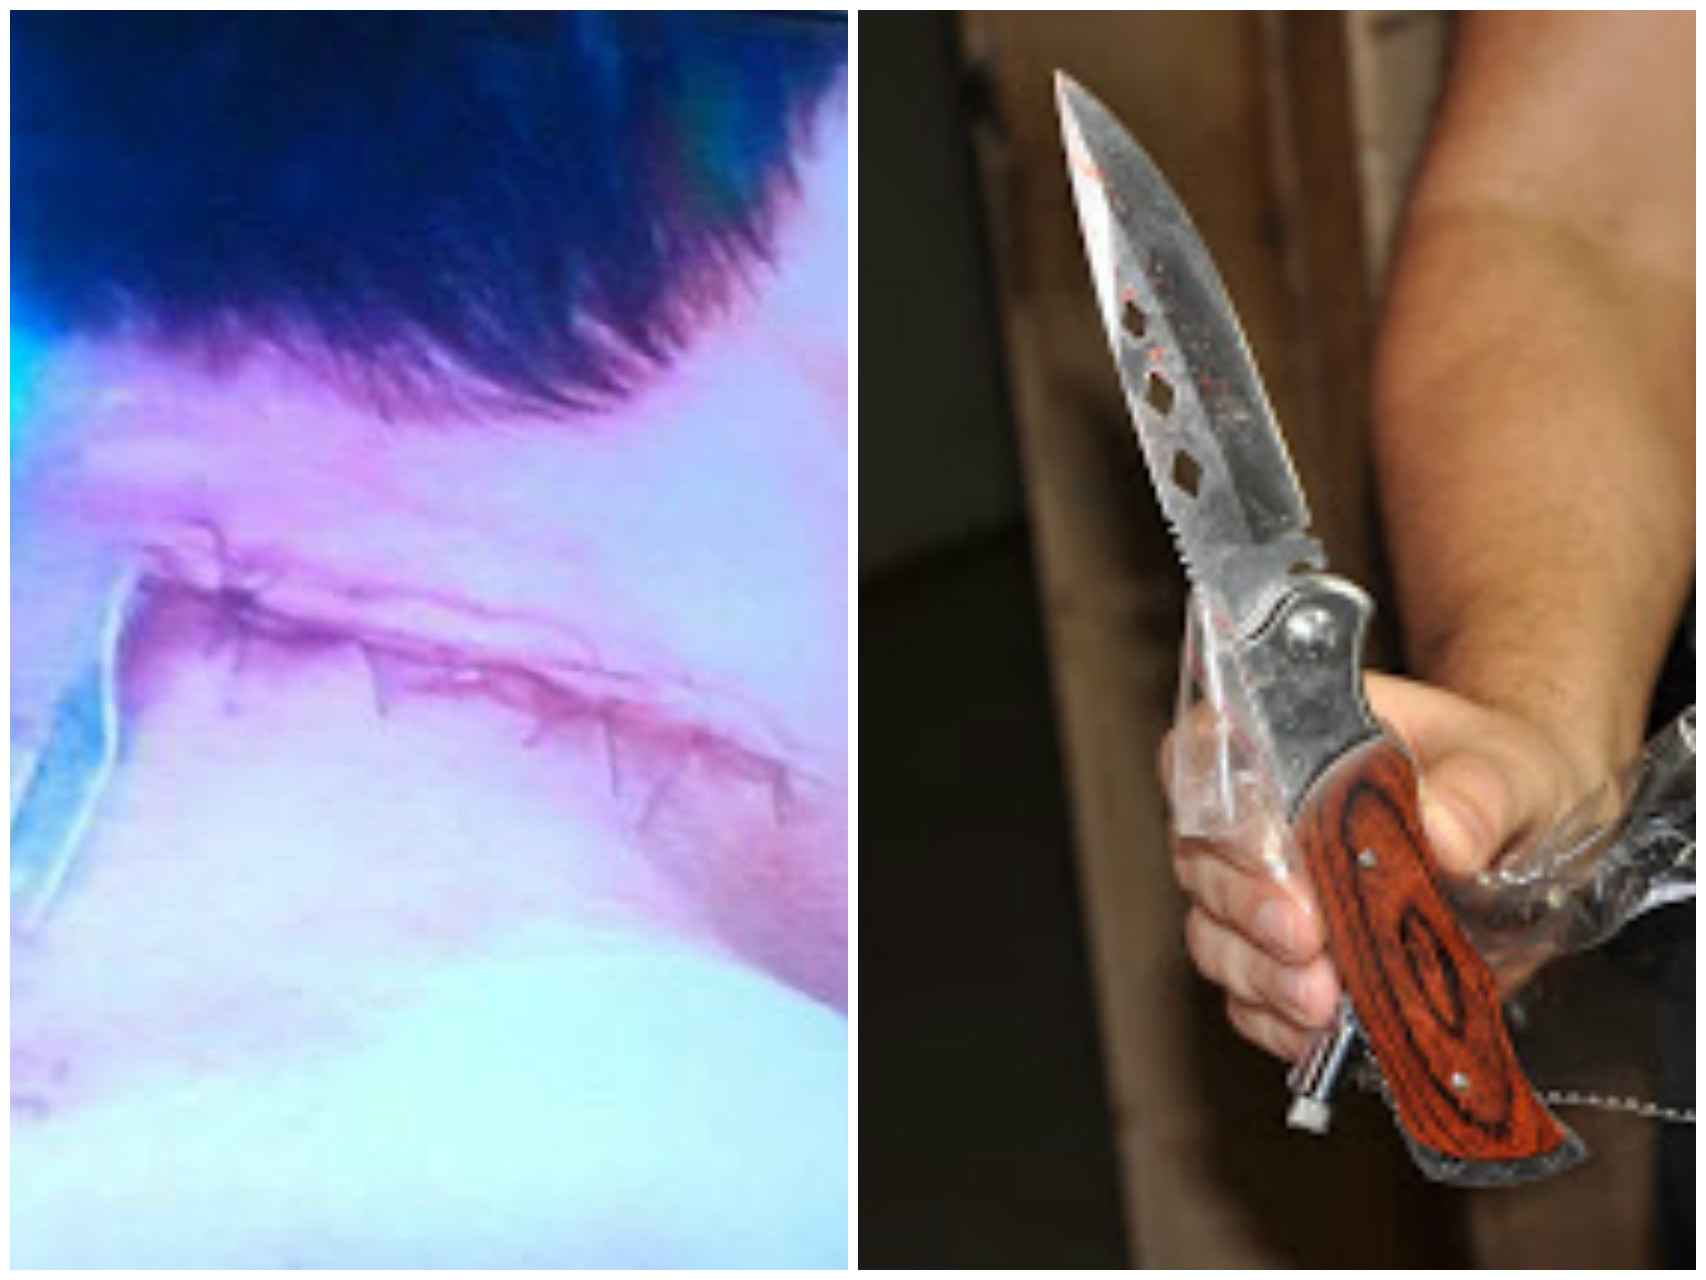 La herida que causó Patrick a su profesor y el cuchillo que utilizó.